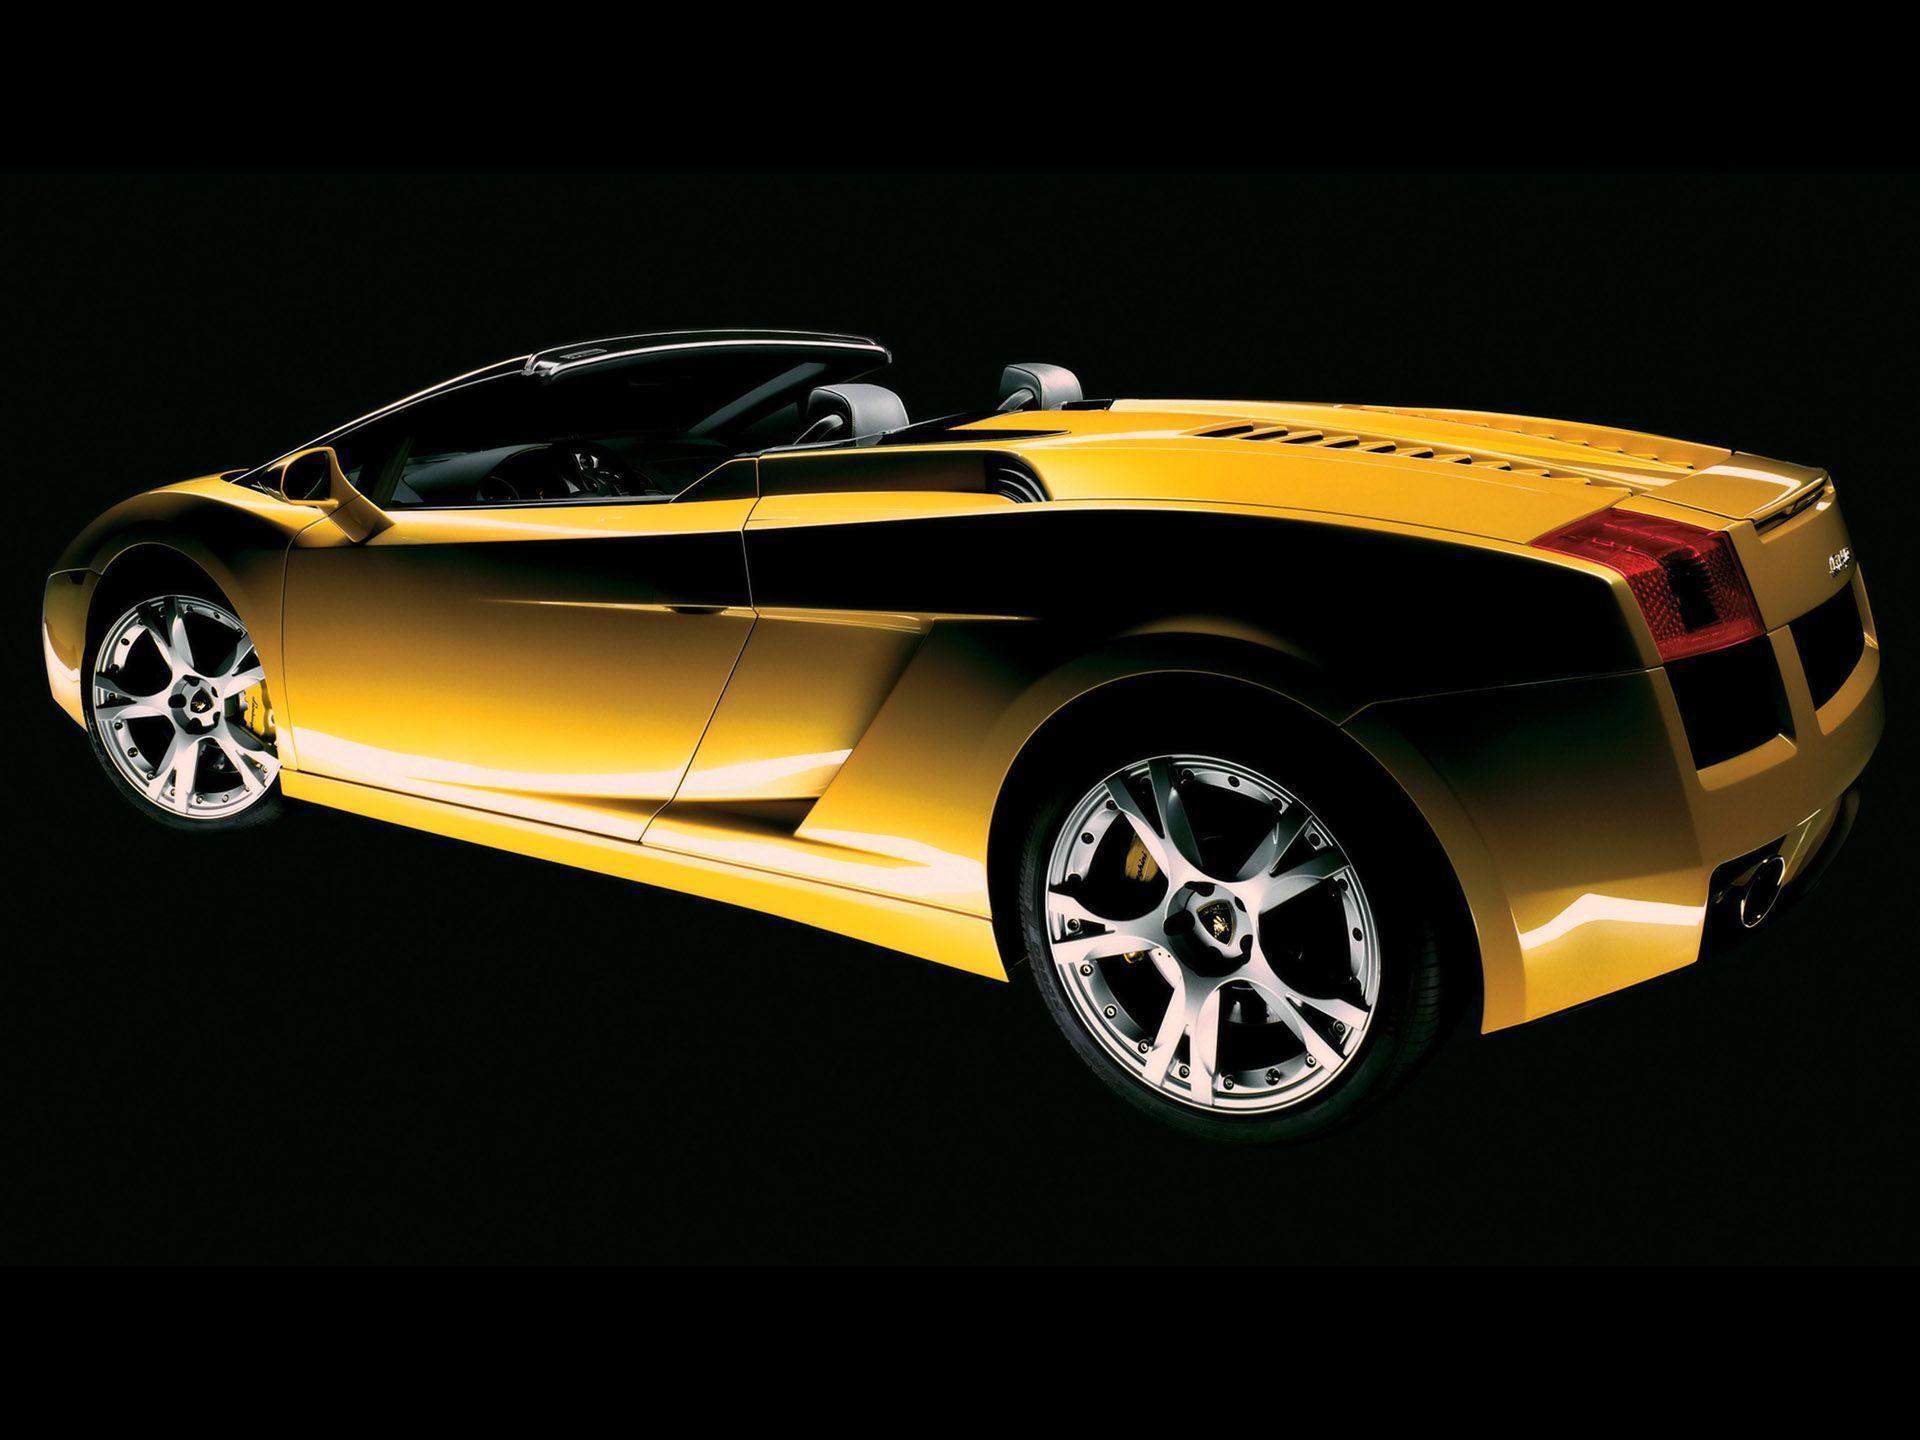 Lamborghini Gallardo Spyder Y Ra Tdcar Sports Cars Super Sports